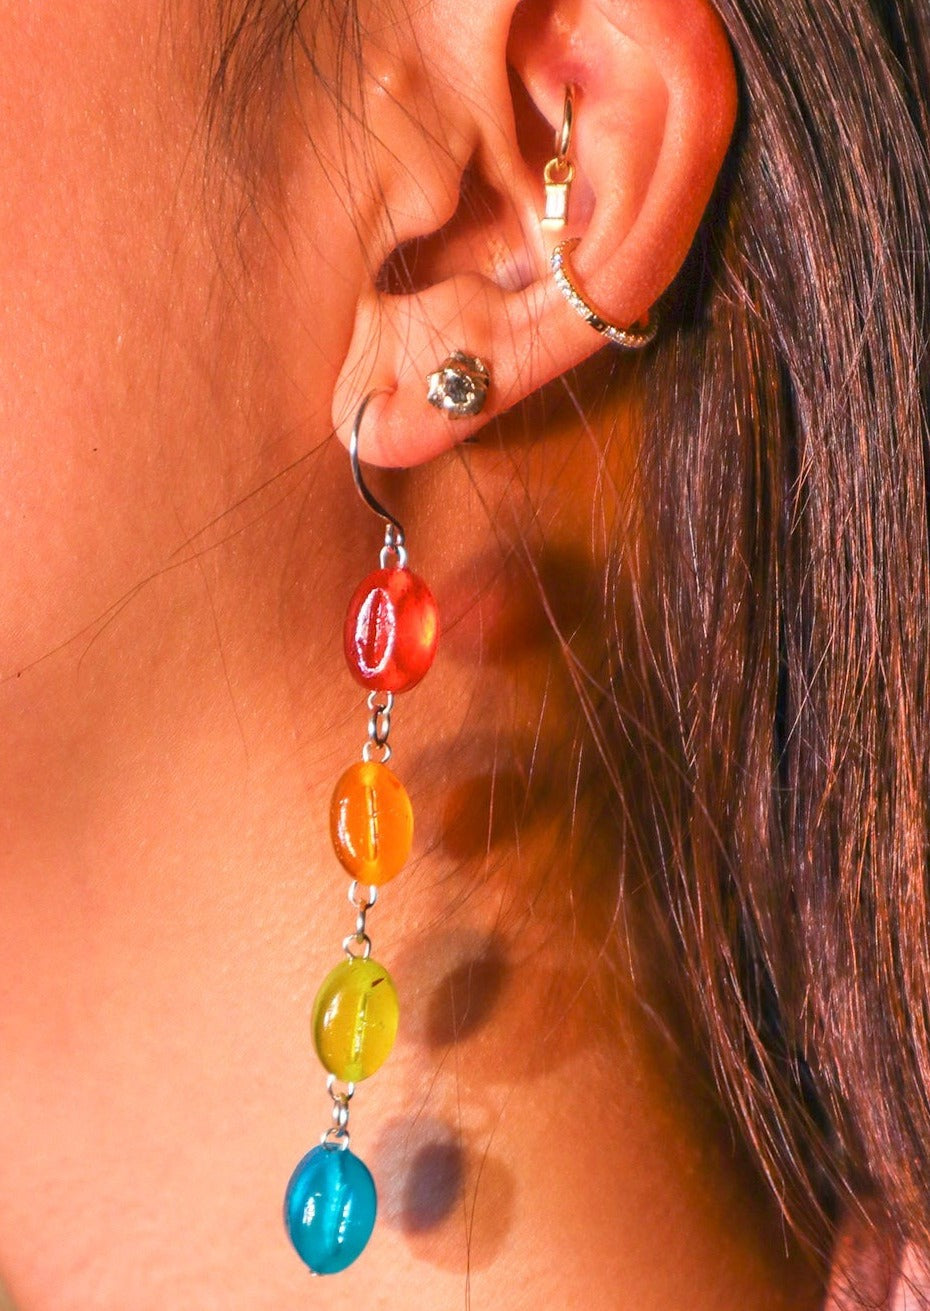 prisma earrings